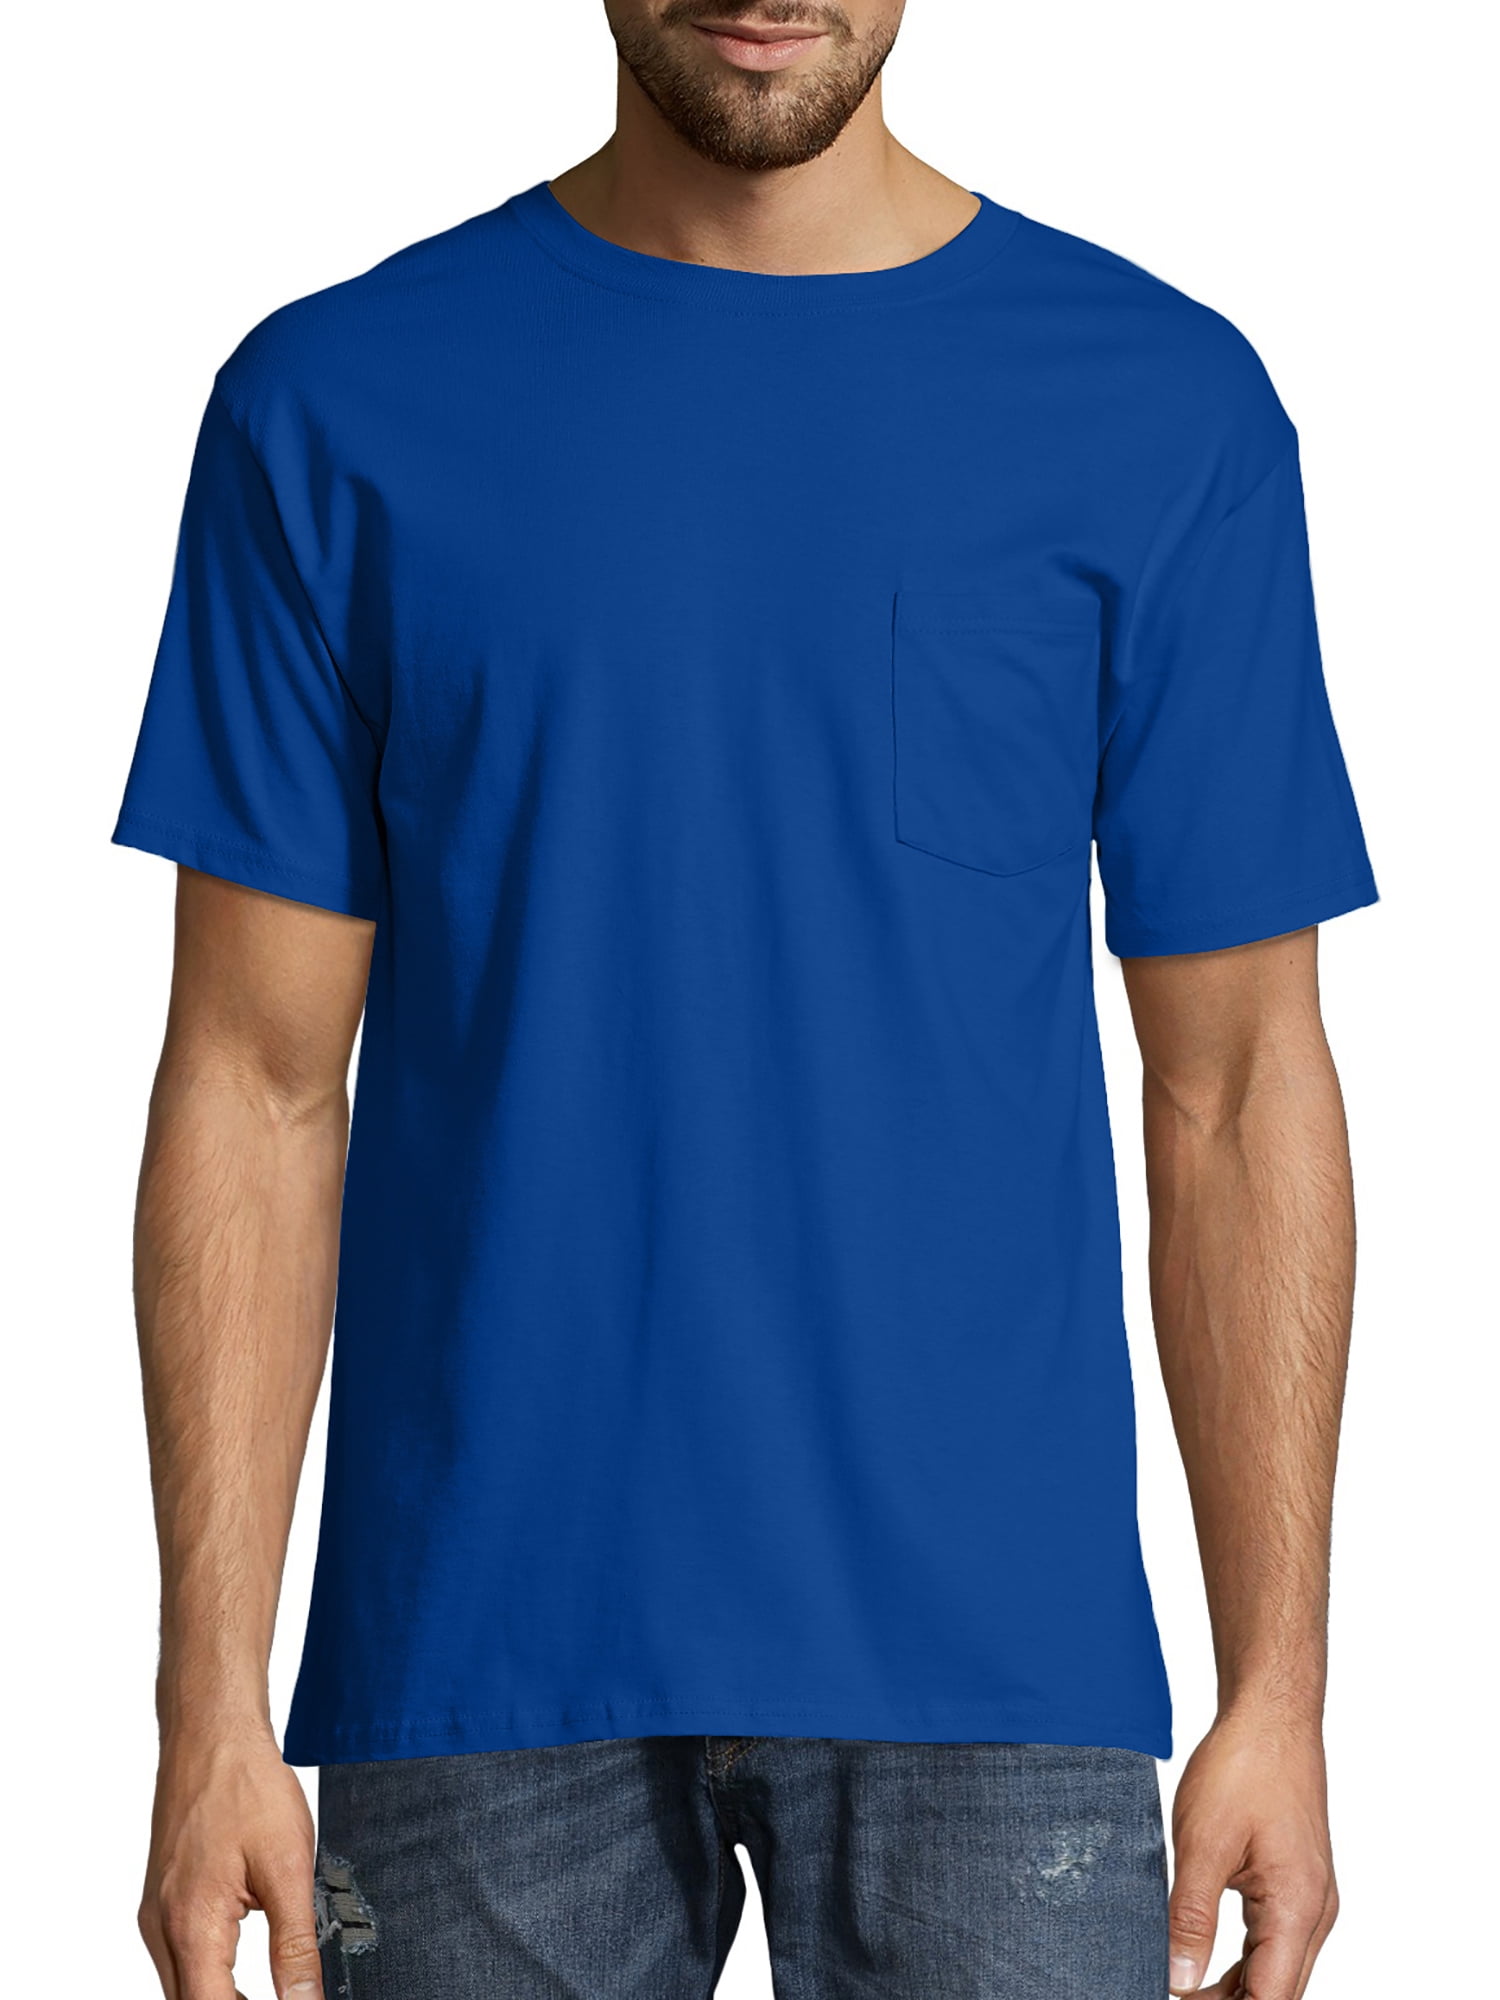 Hanes 6.1 oz. Pocket T-Shirt (H5590) Deep Royal Blue, L - Walmart.com